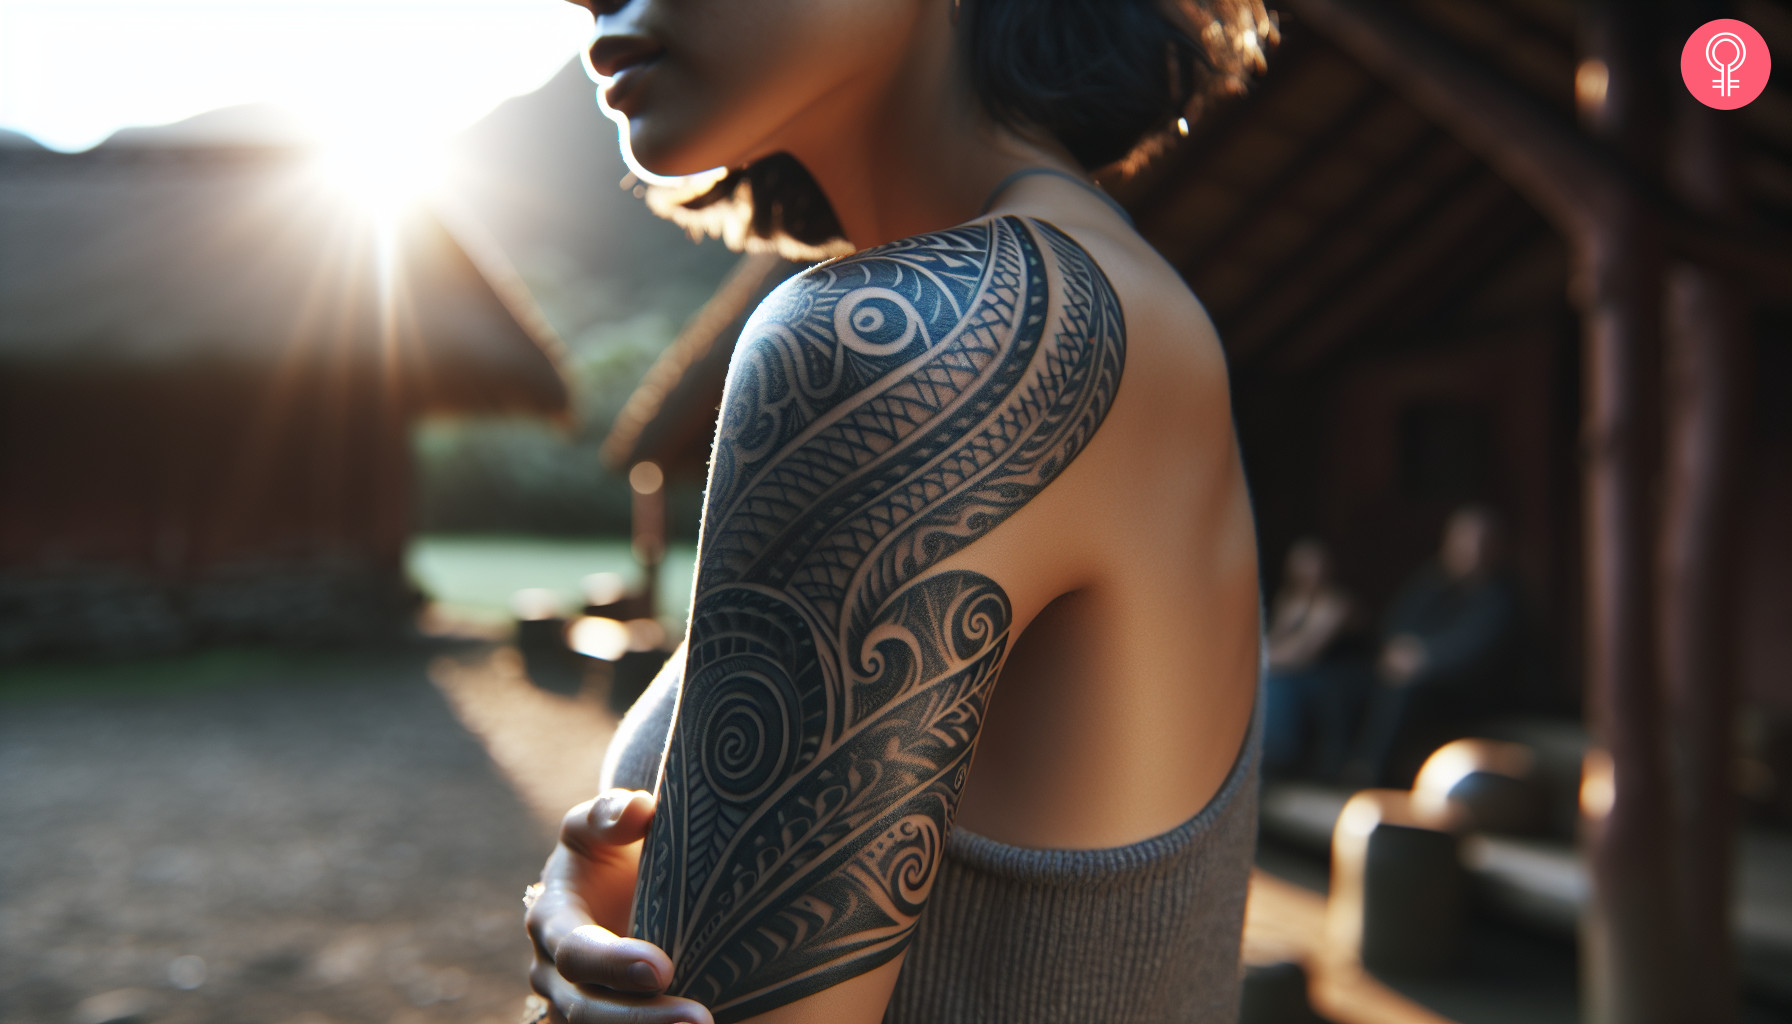 Black maori tribal tattoo on the upper arm